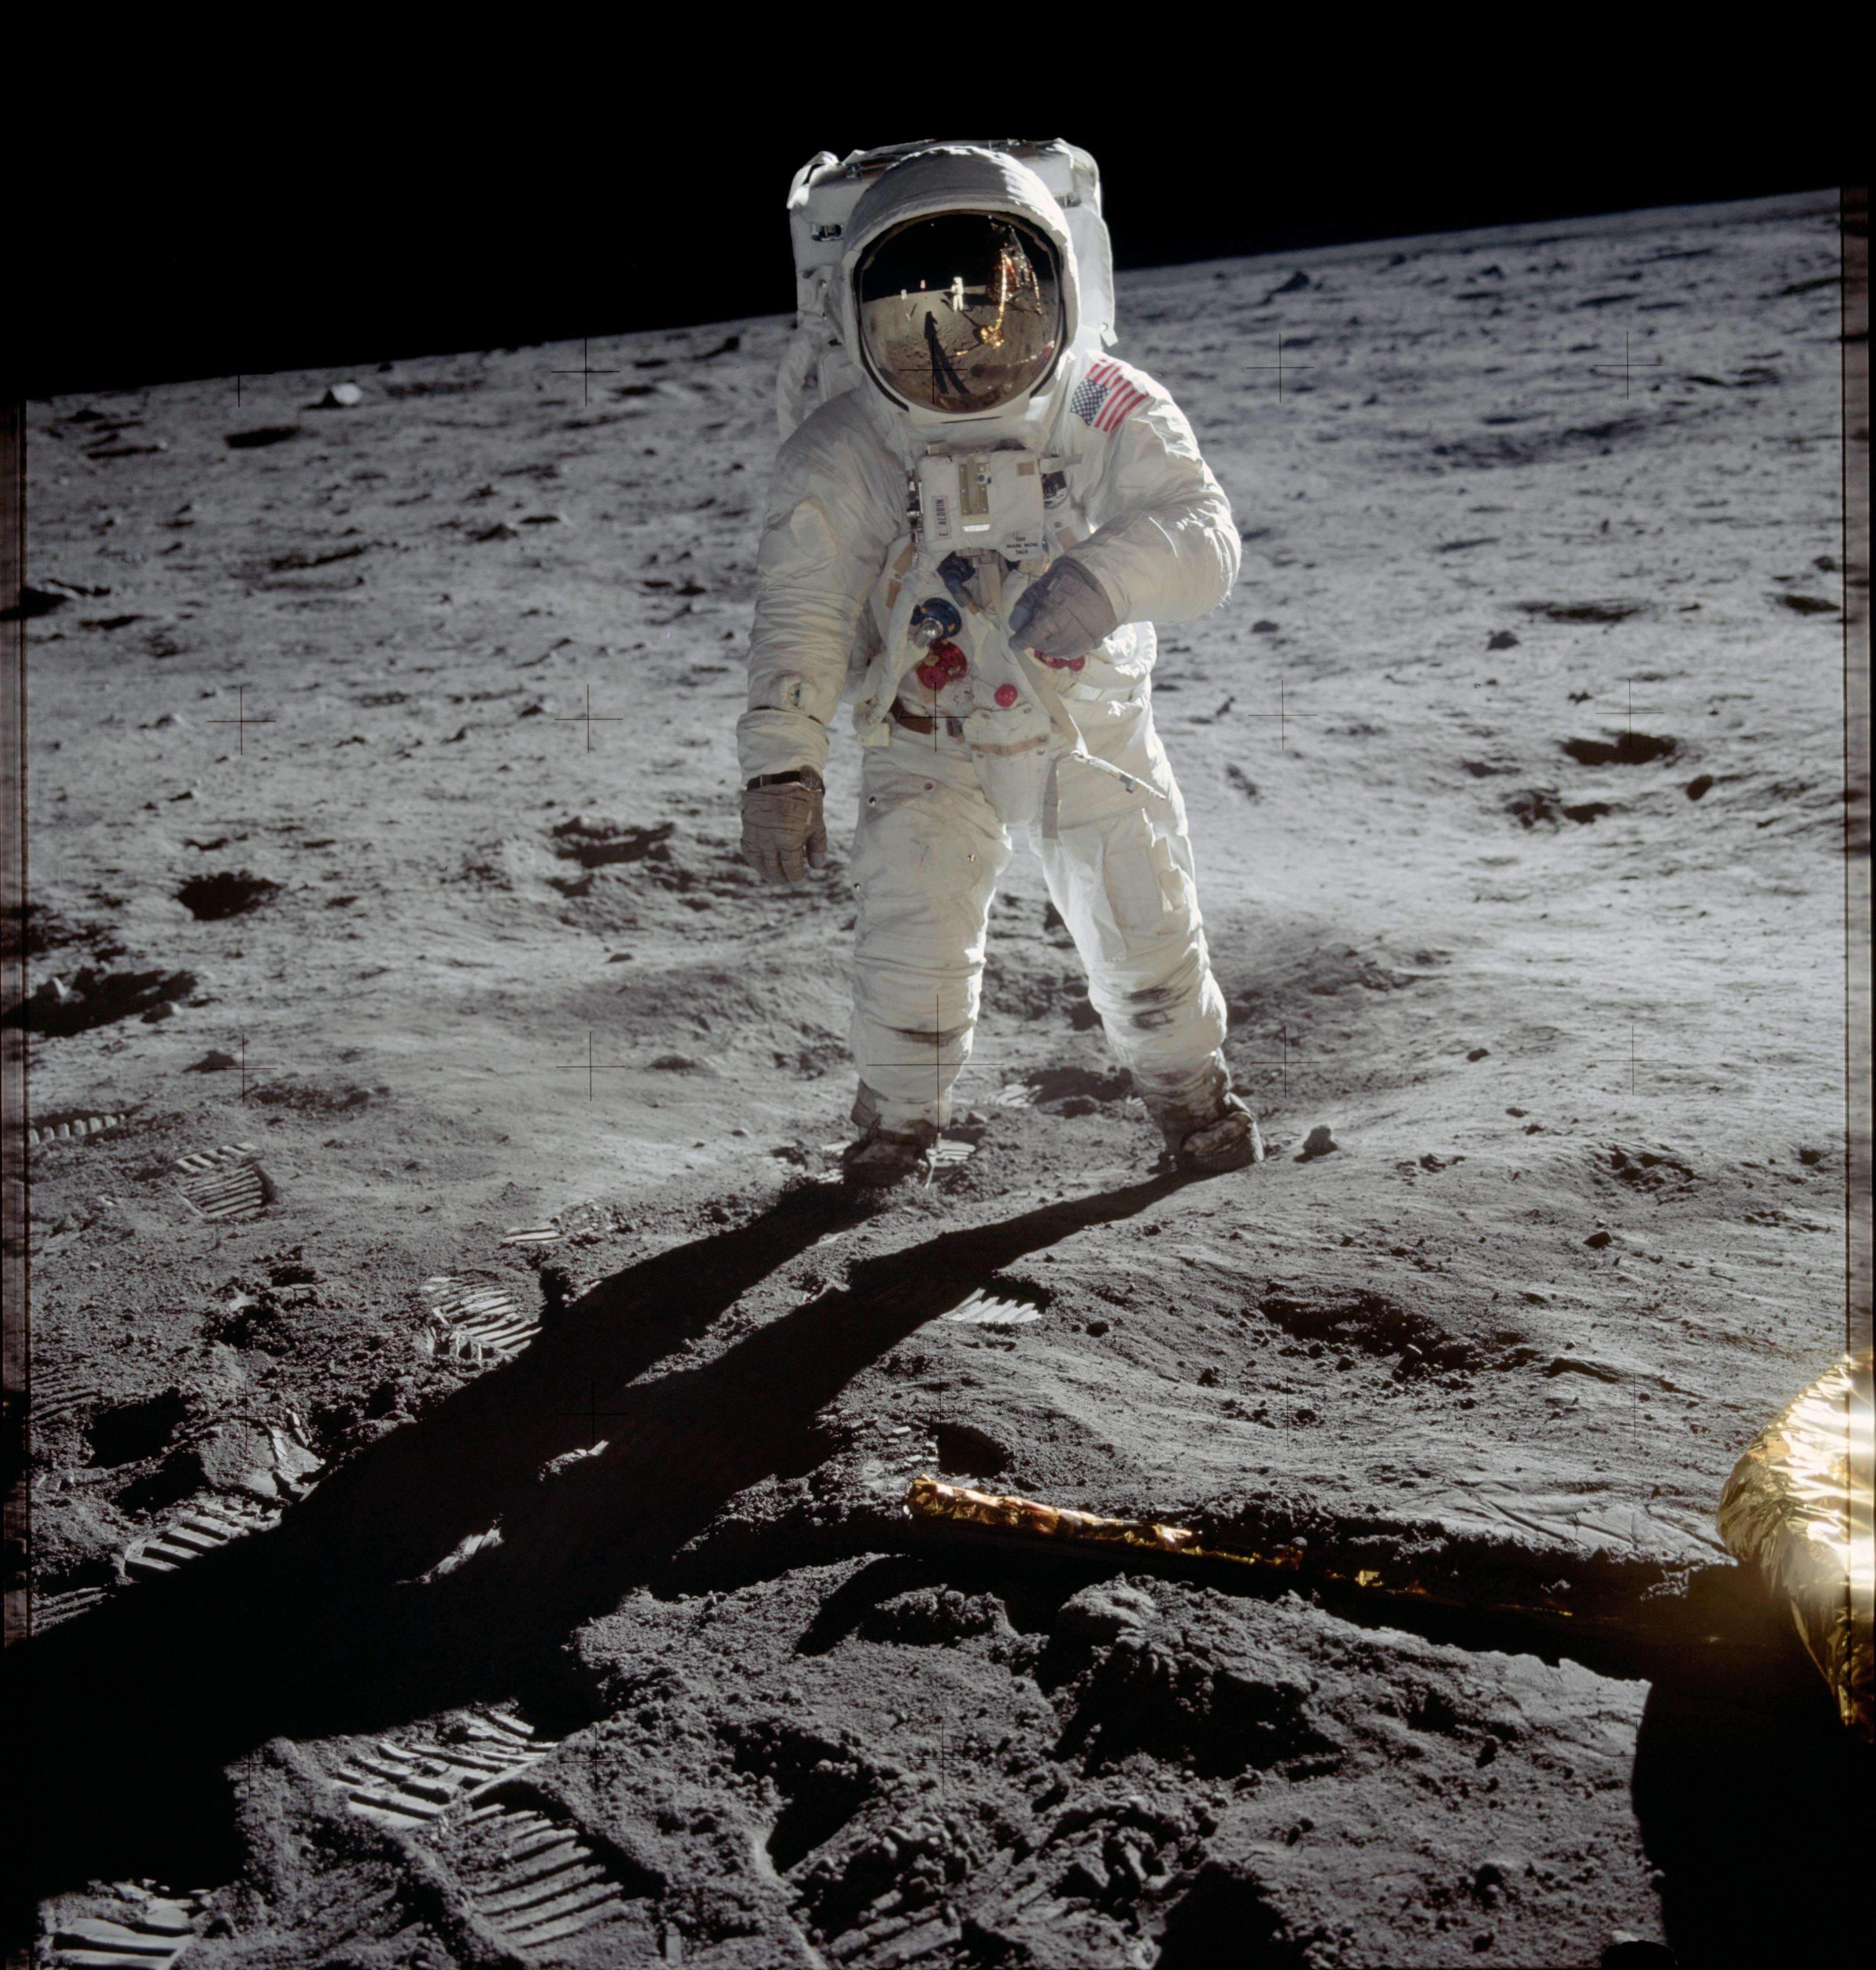 Eavesdropping on Apollo 11